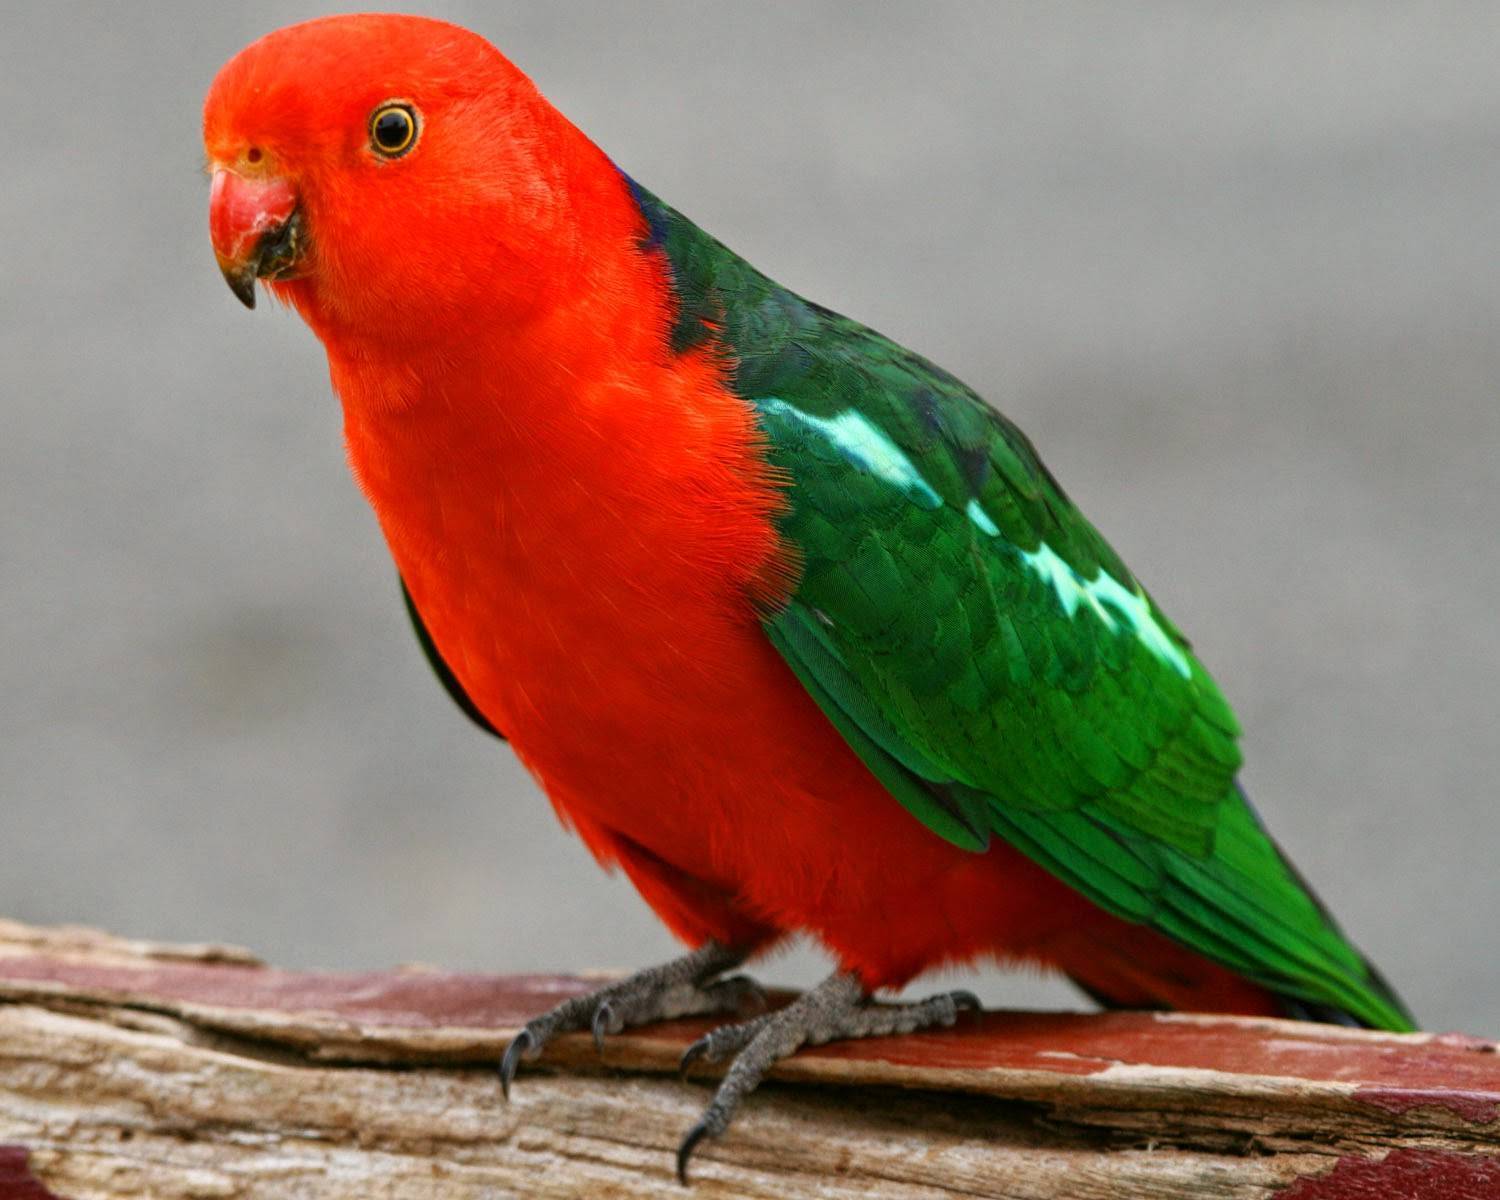 Все о конголезских попугаях: описание, фото, содержание дома